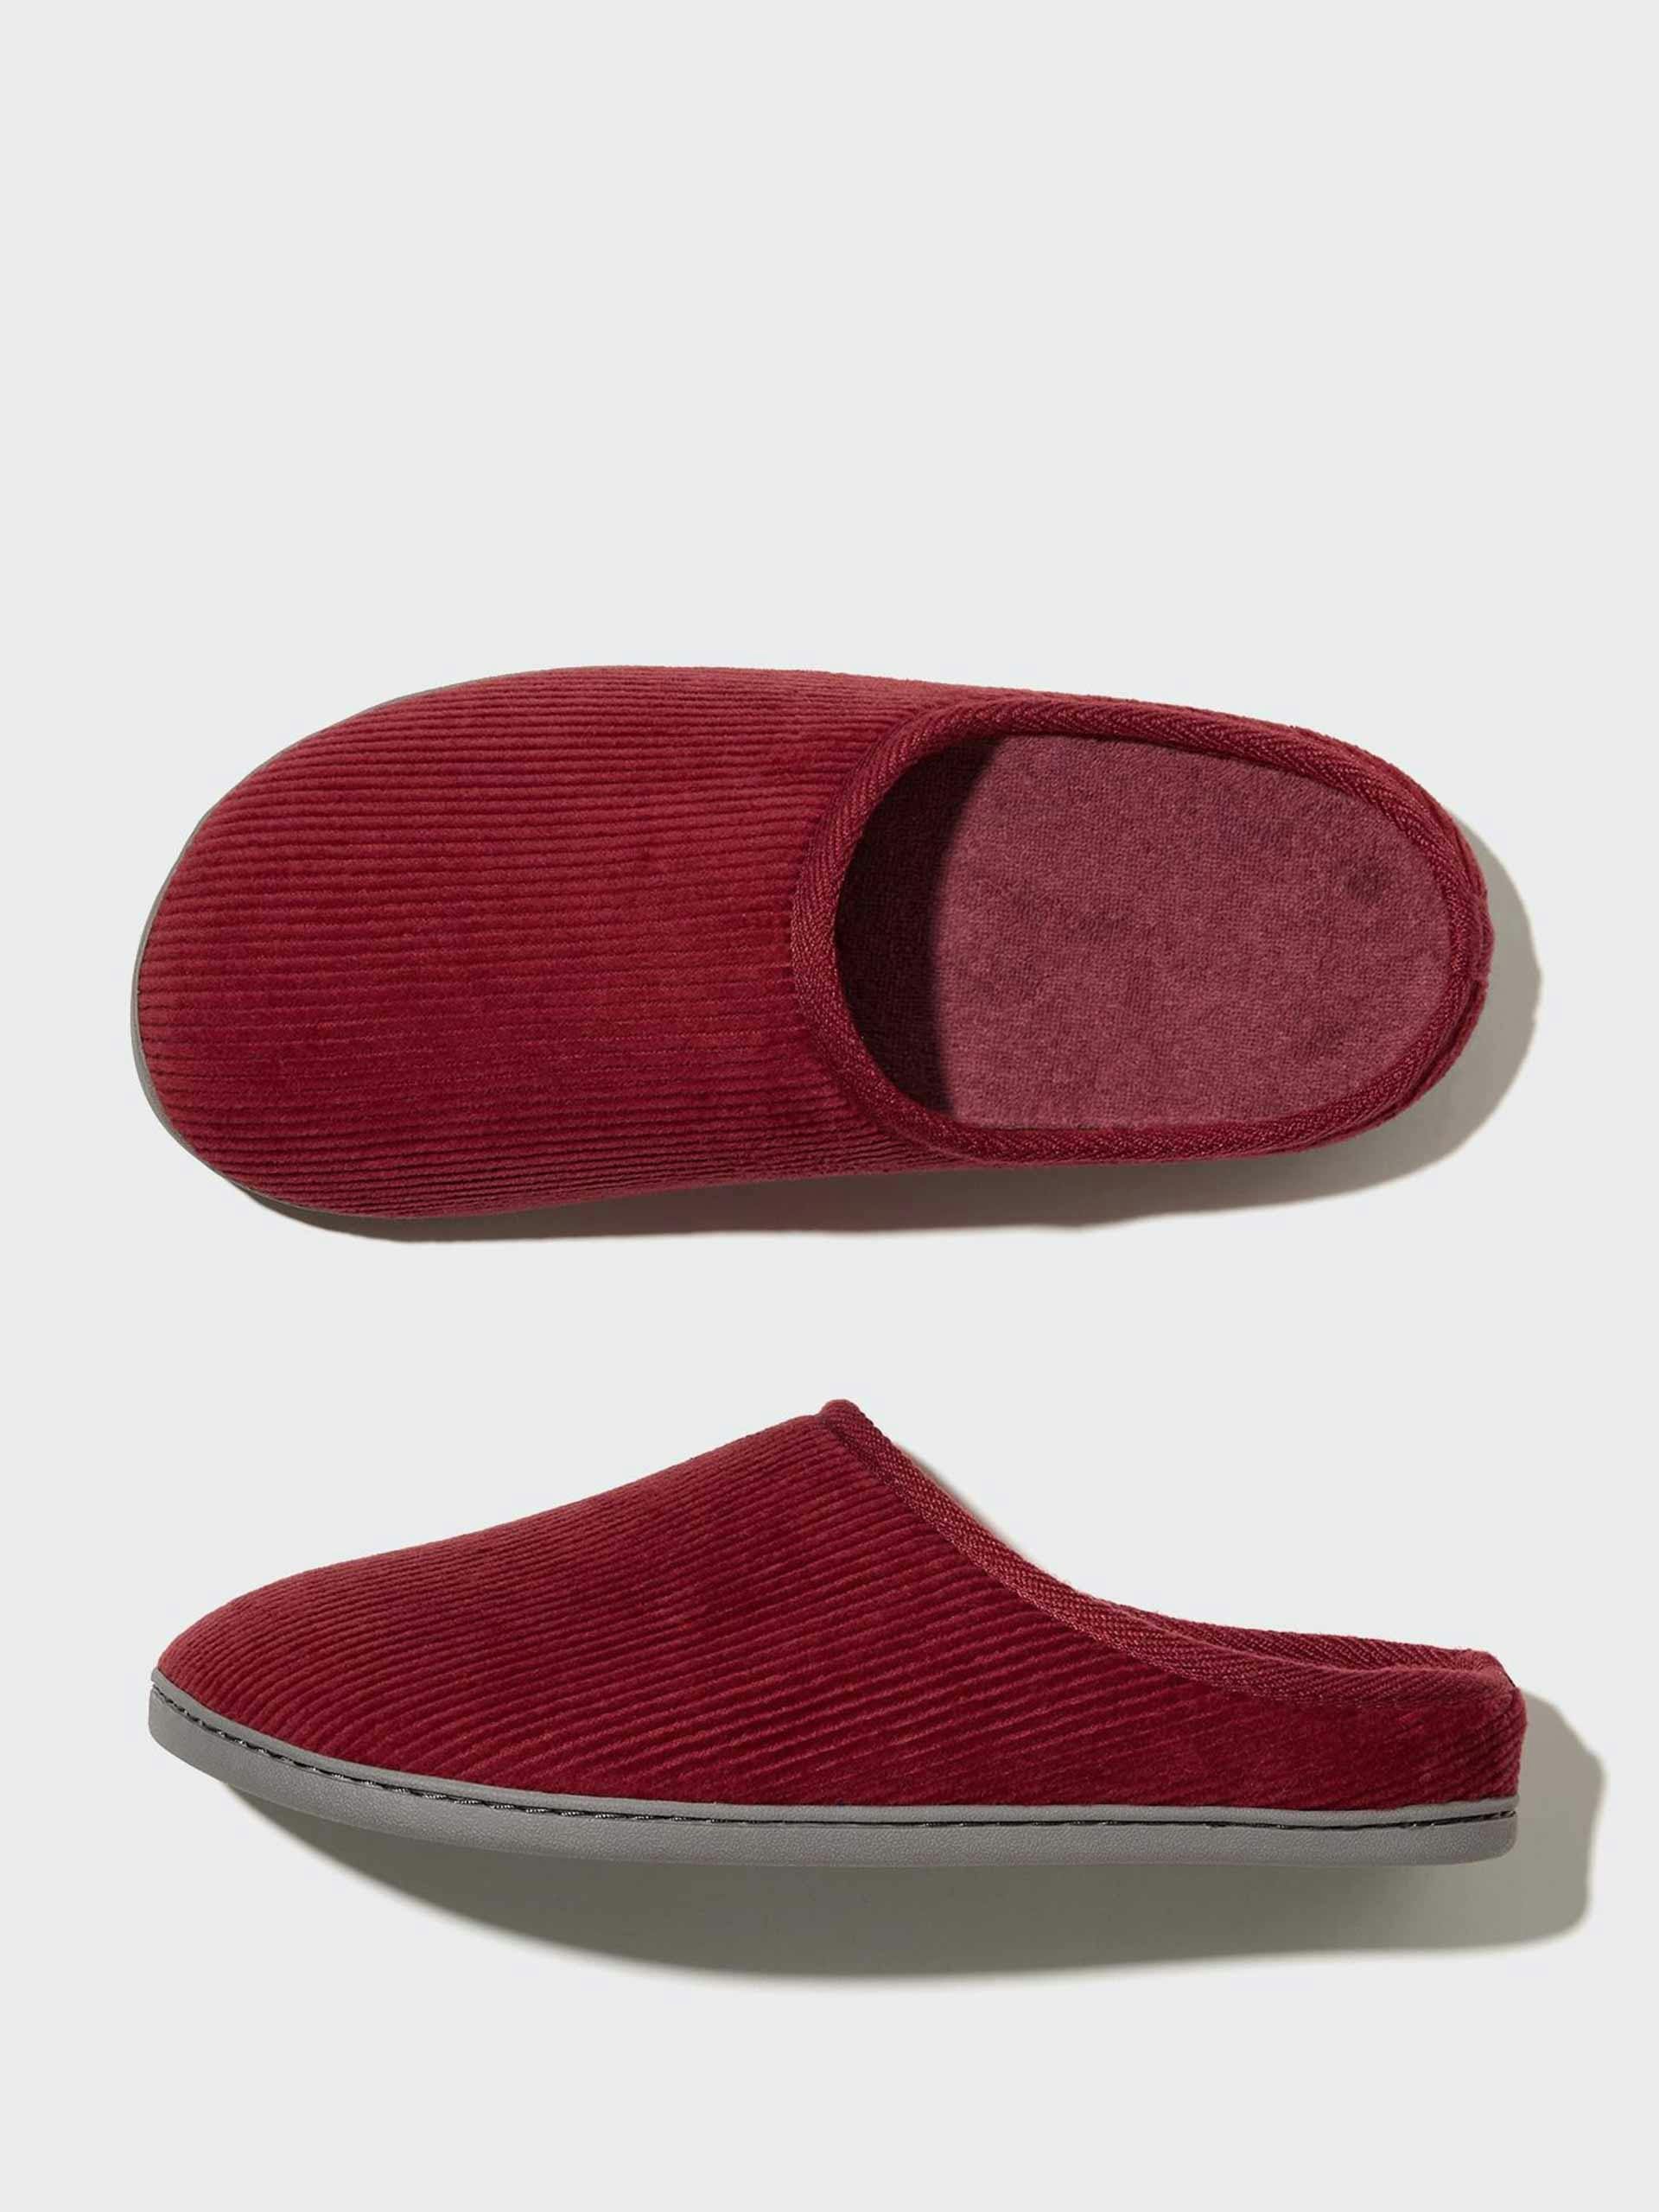 Corduroy slippers